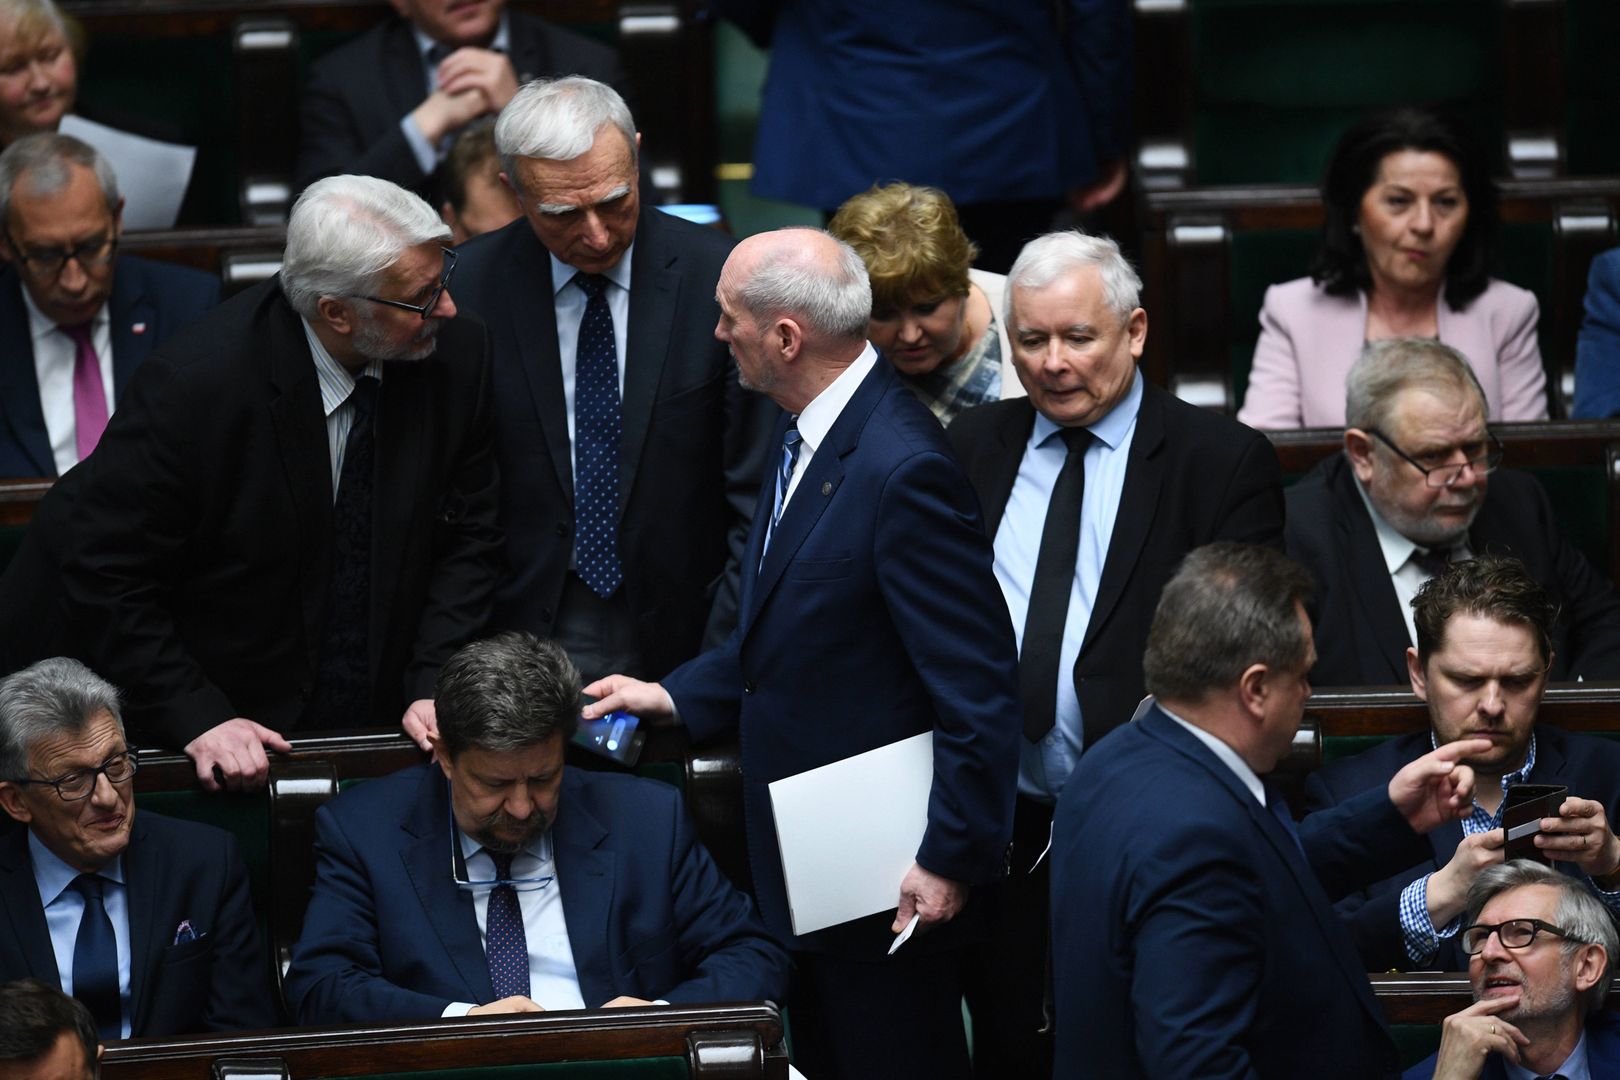 W raporcie podkreślono, że w Polsce "coraz bardziej zwiększa się presja na liberalną demokrację"